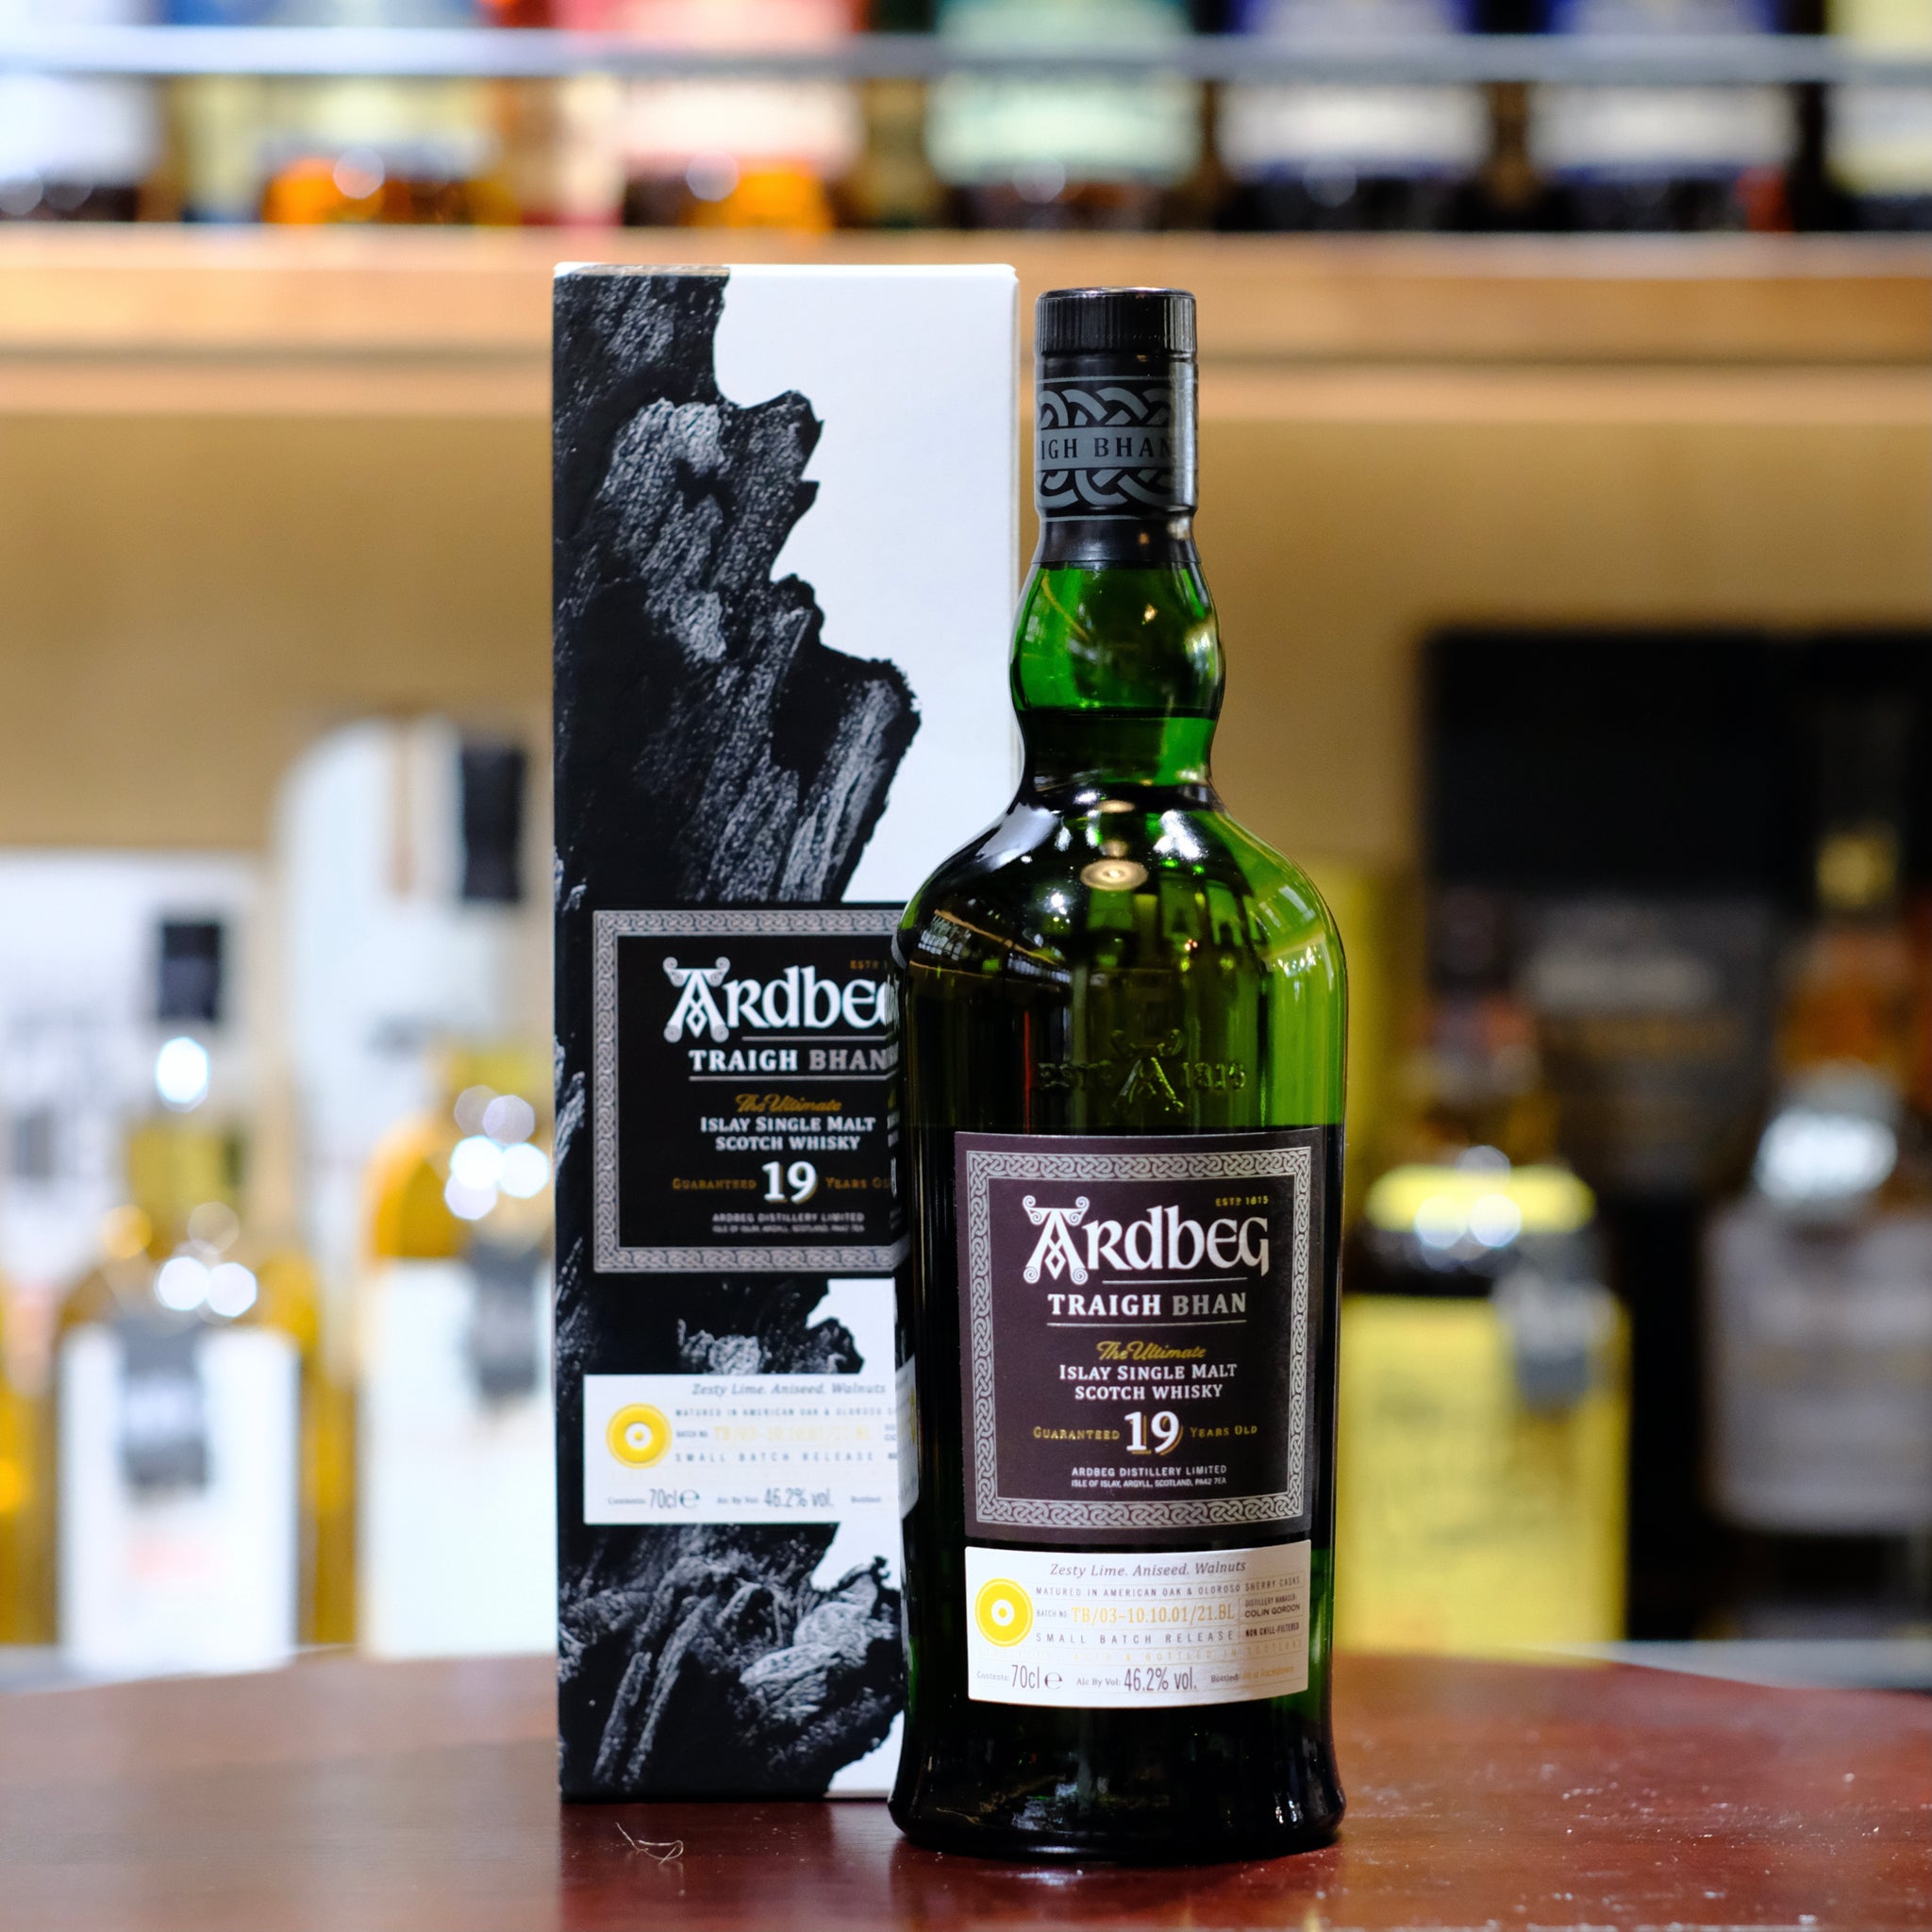 Ardbeg 19 Year Old Traigh Bhan Single Malt Scotch Whisky (Batch 3)